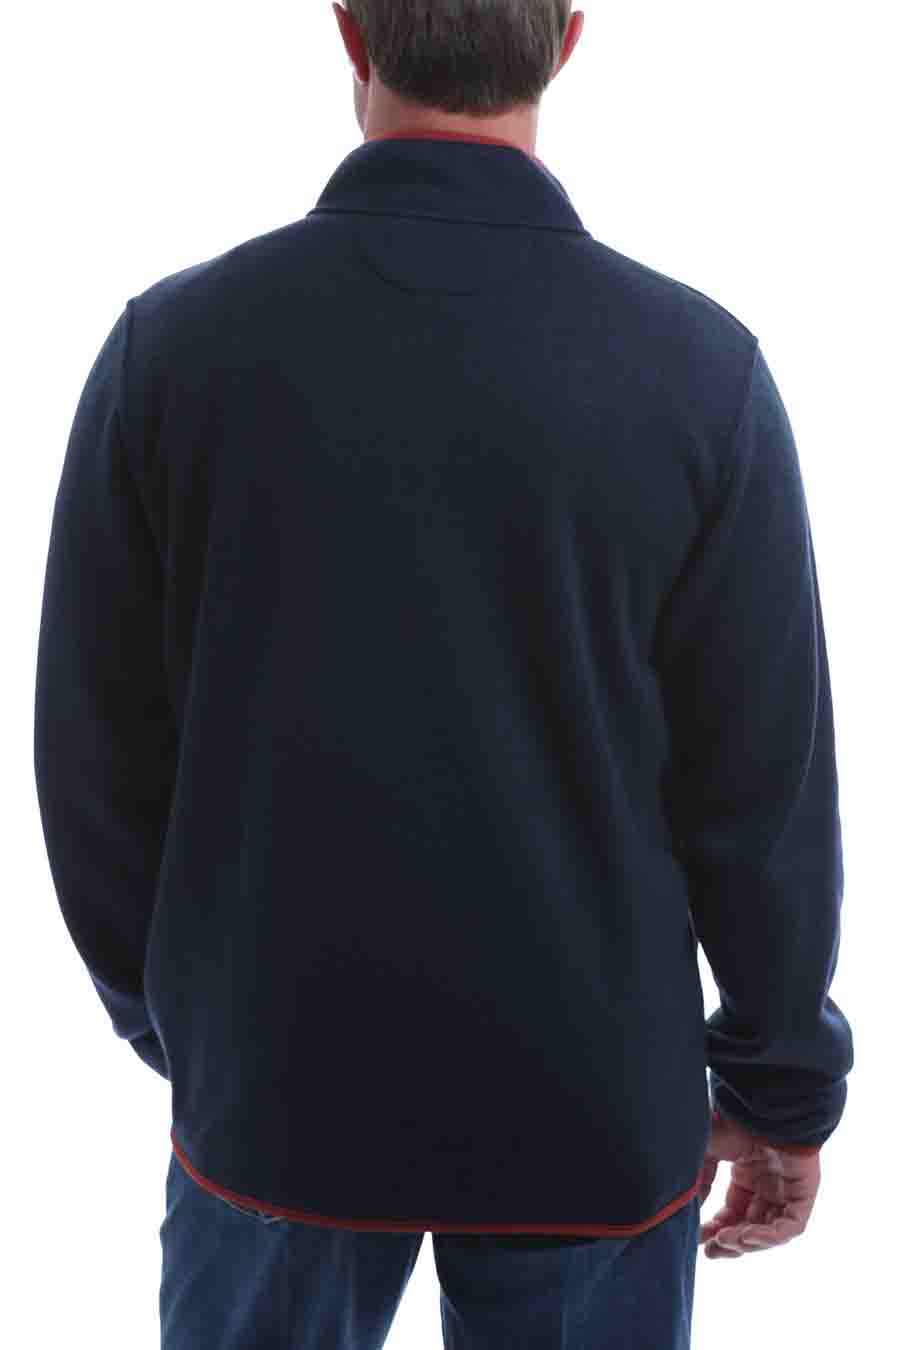 Cinch Fleece Pullover Navy Multi